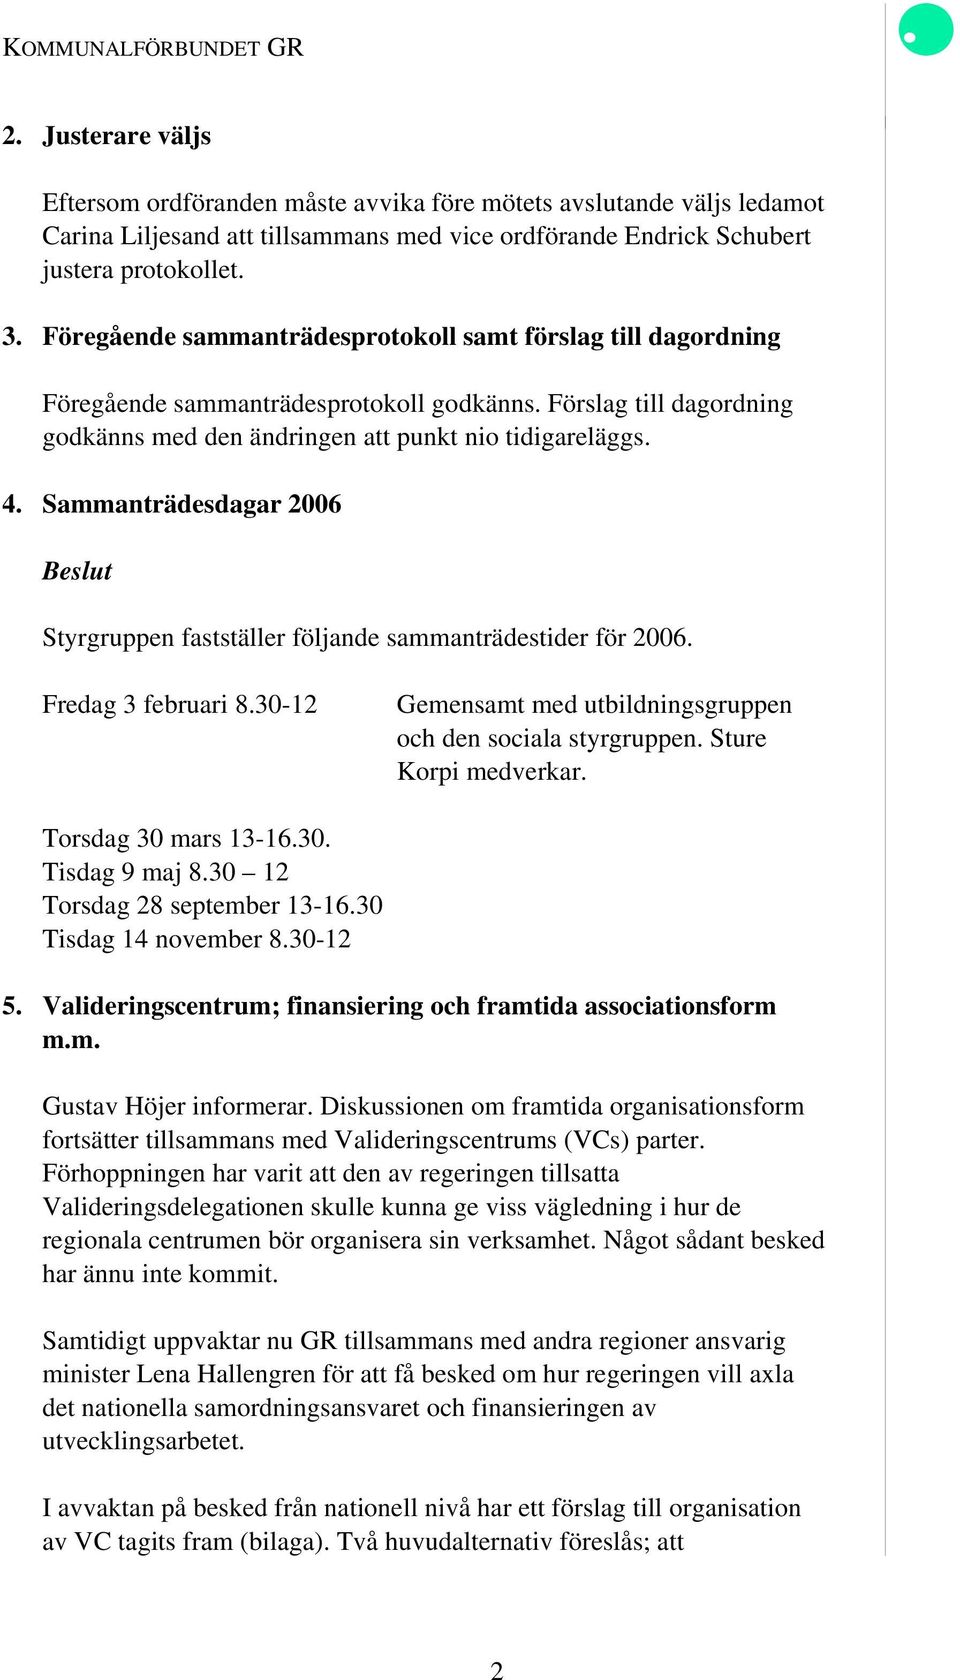 Sammanträdesdagar 2006 Styrgruppen fastställer följande sammanträdestider för 2006. Fredag 3 februari 8.30-12 Gemensamt med utbildningsgruppen och den sociala styrgruppen. Sture Korpi medverkar.